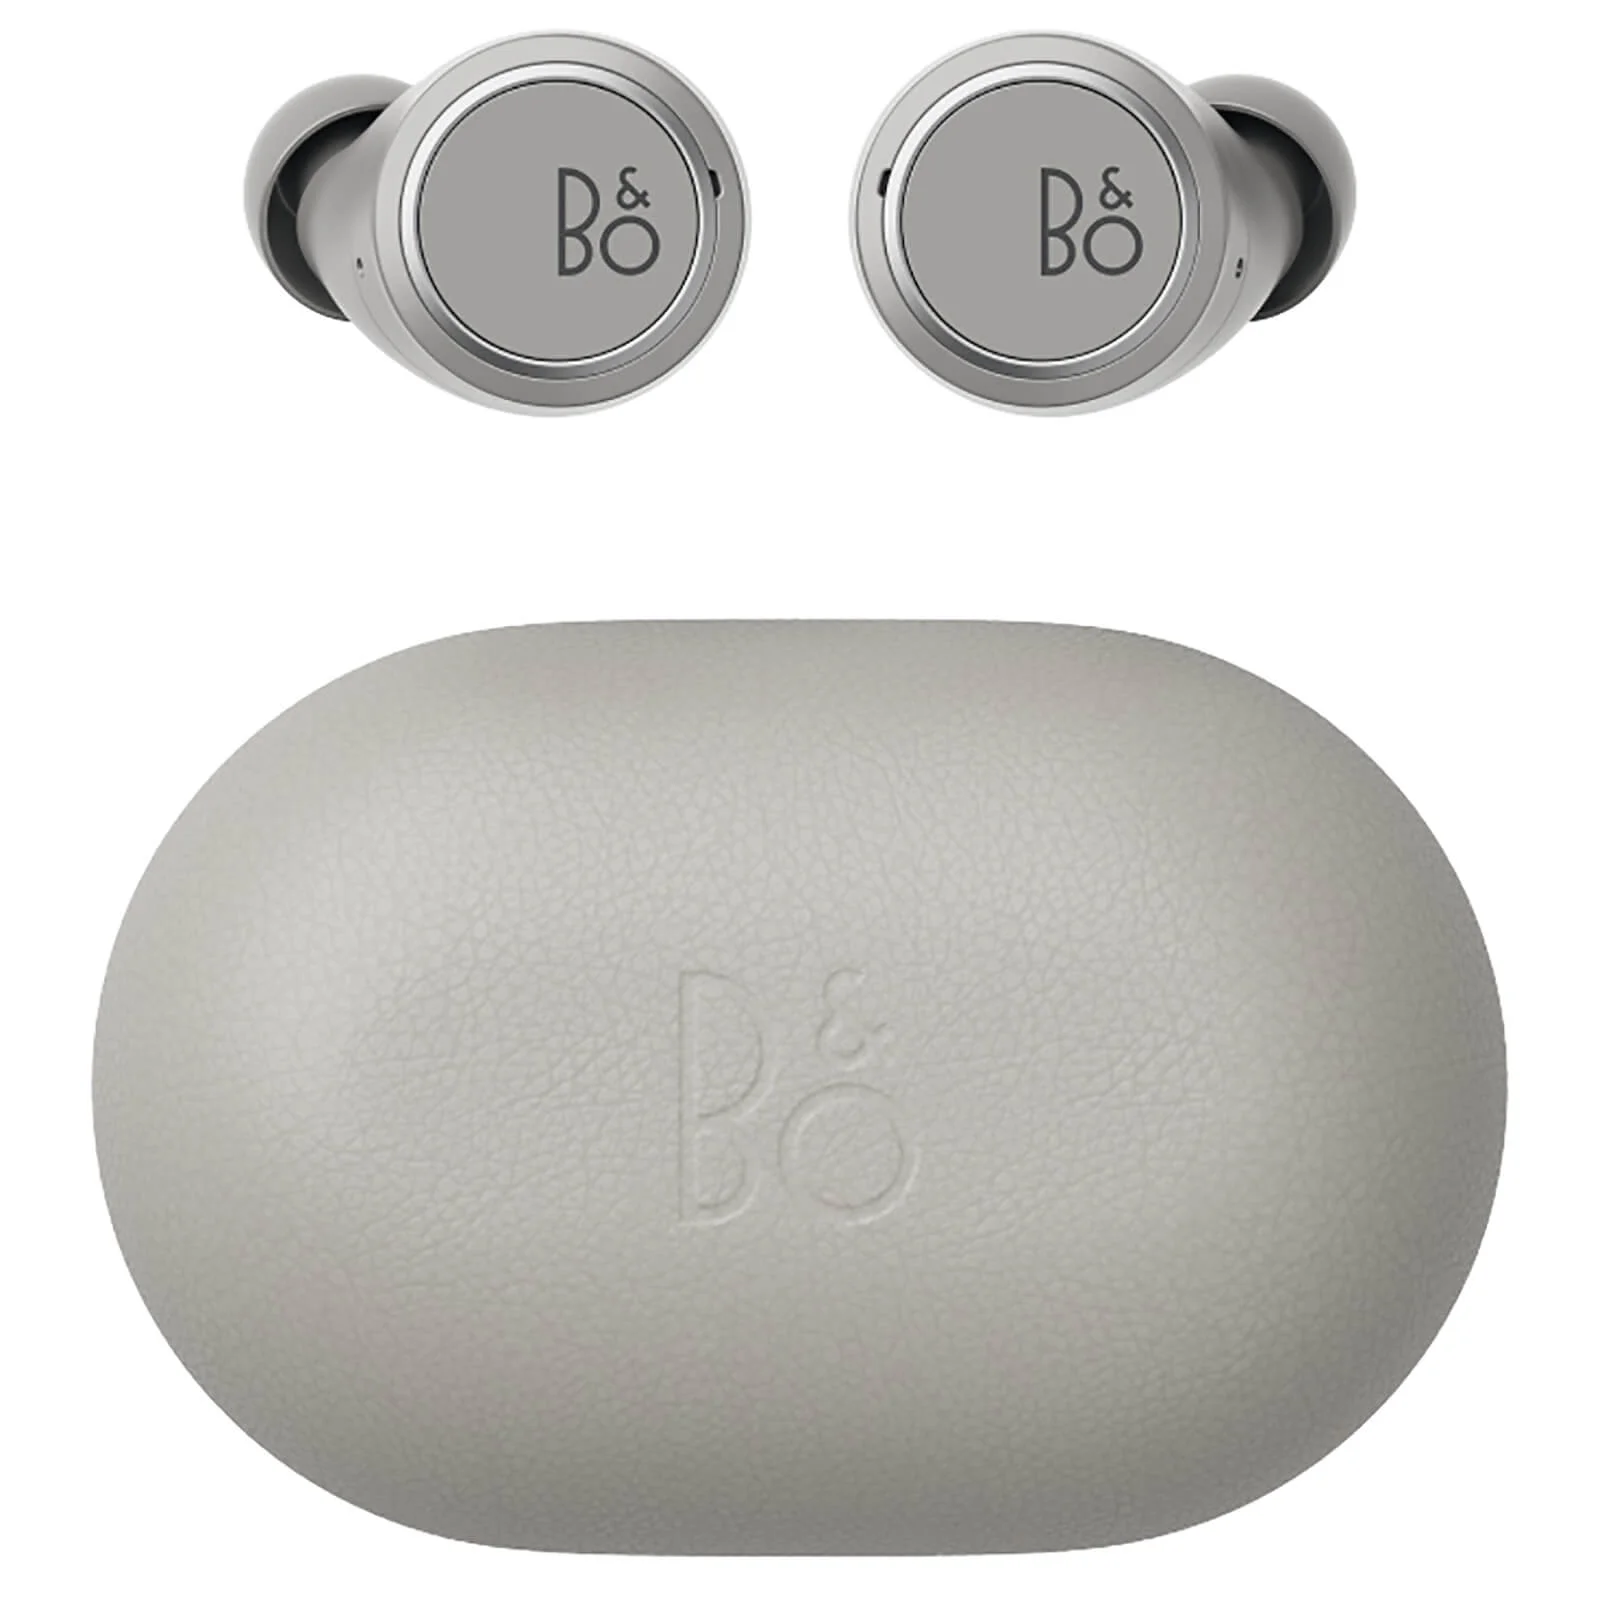 Bang & Olufsen Beoplay E8 3.0 Wireless In Ear Earphones - Grey Mist Image 1